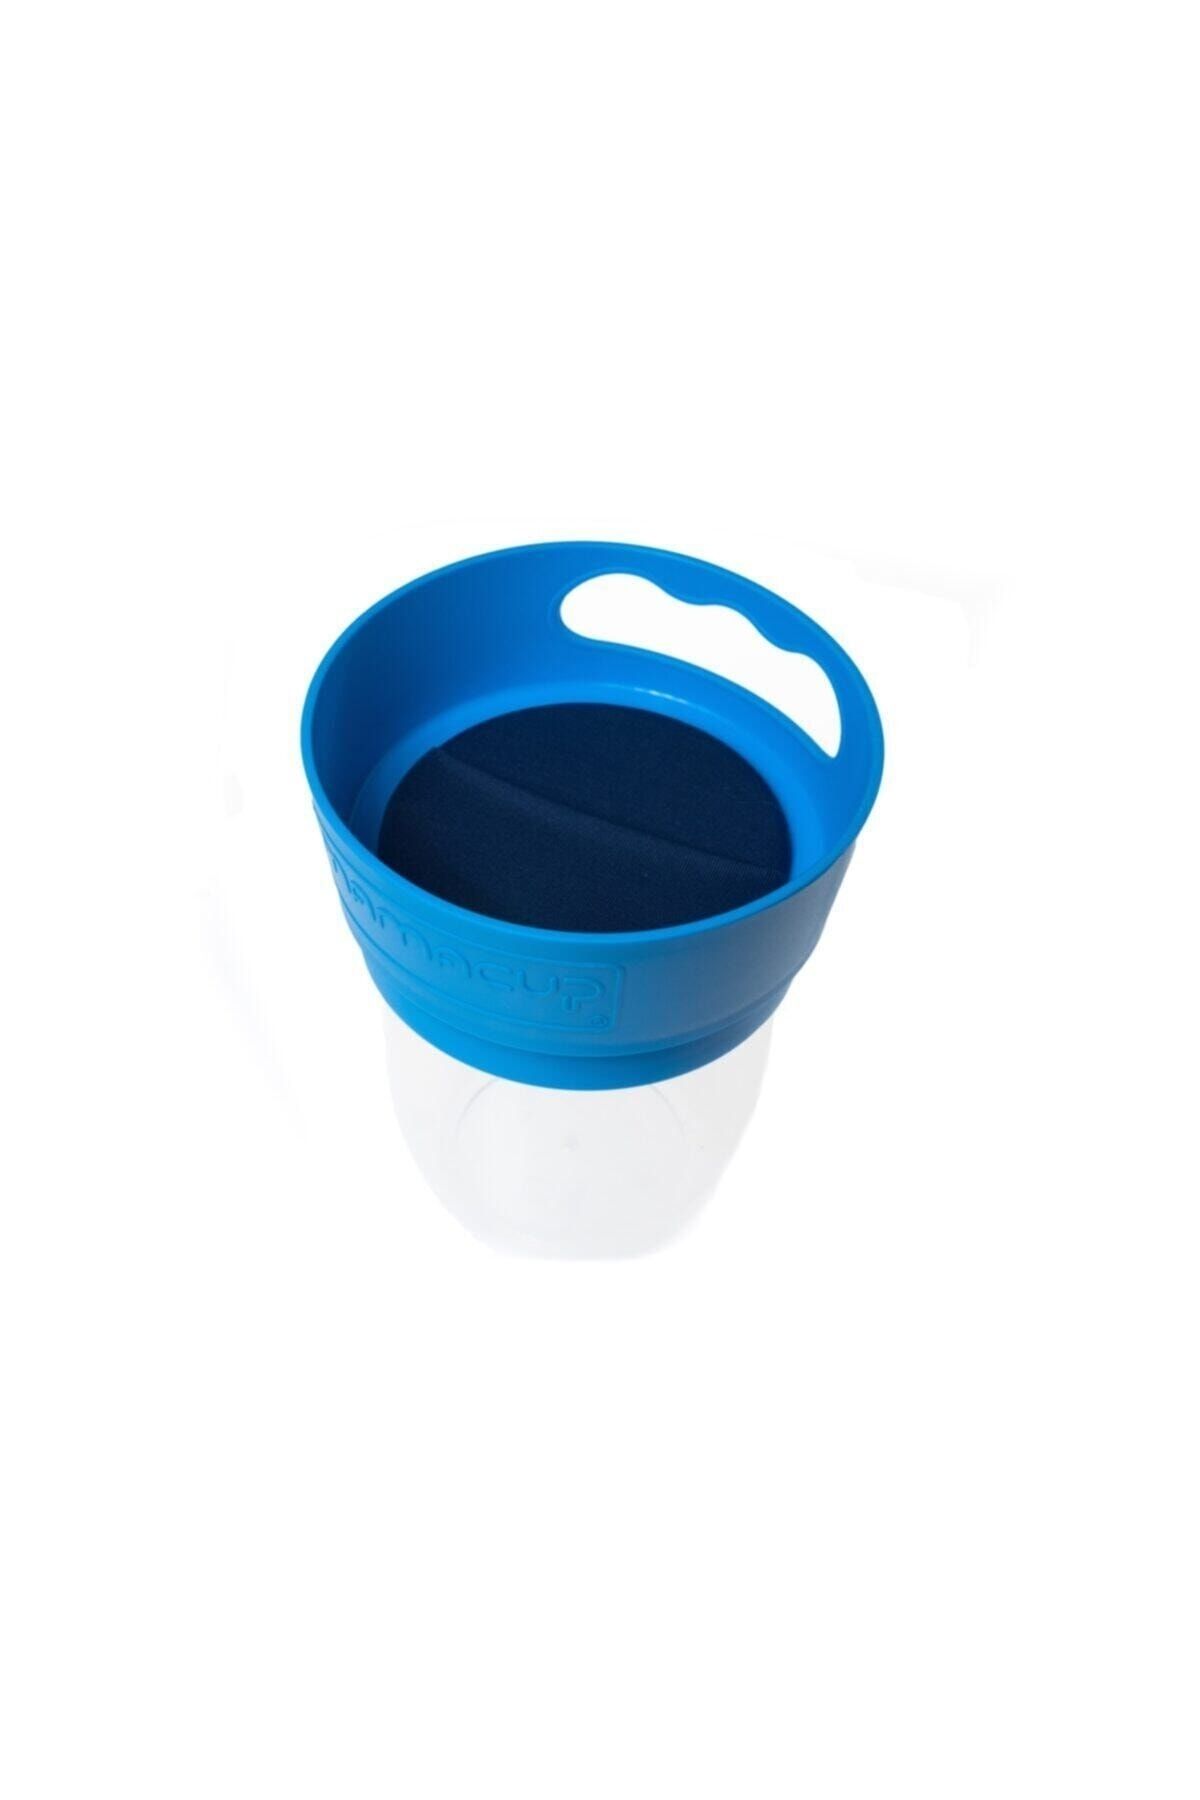 MamaCup Dökülmeyi Önleyen Atıştırmalık Kap / Atıştırma Bardağı Mavi